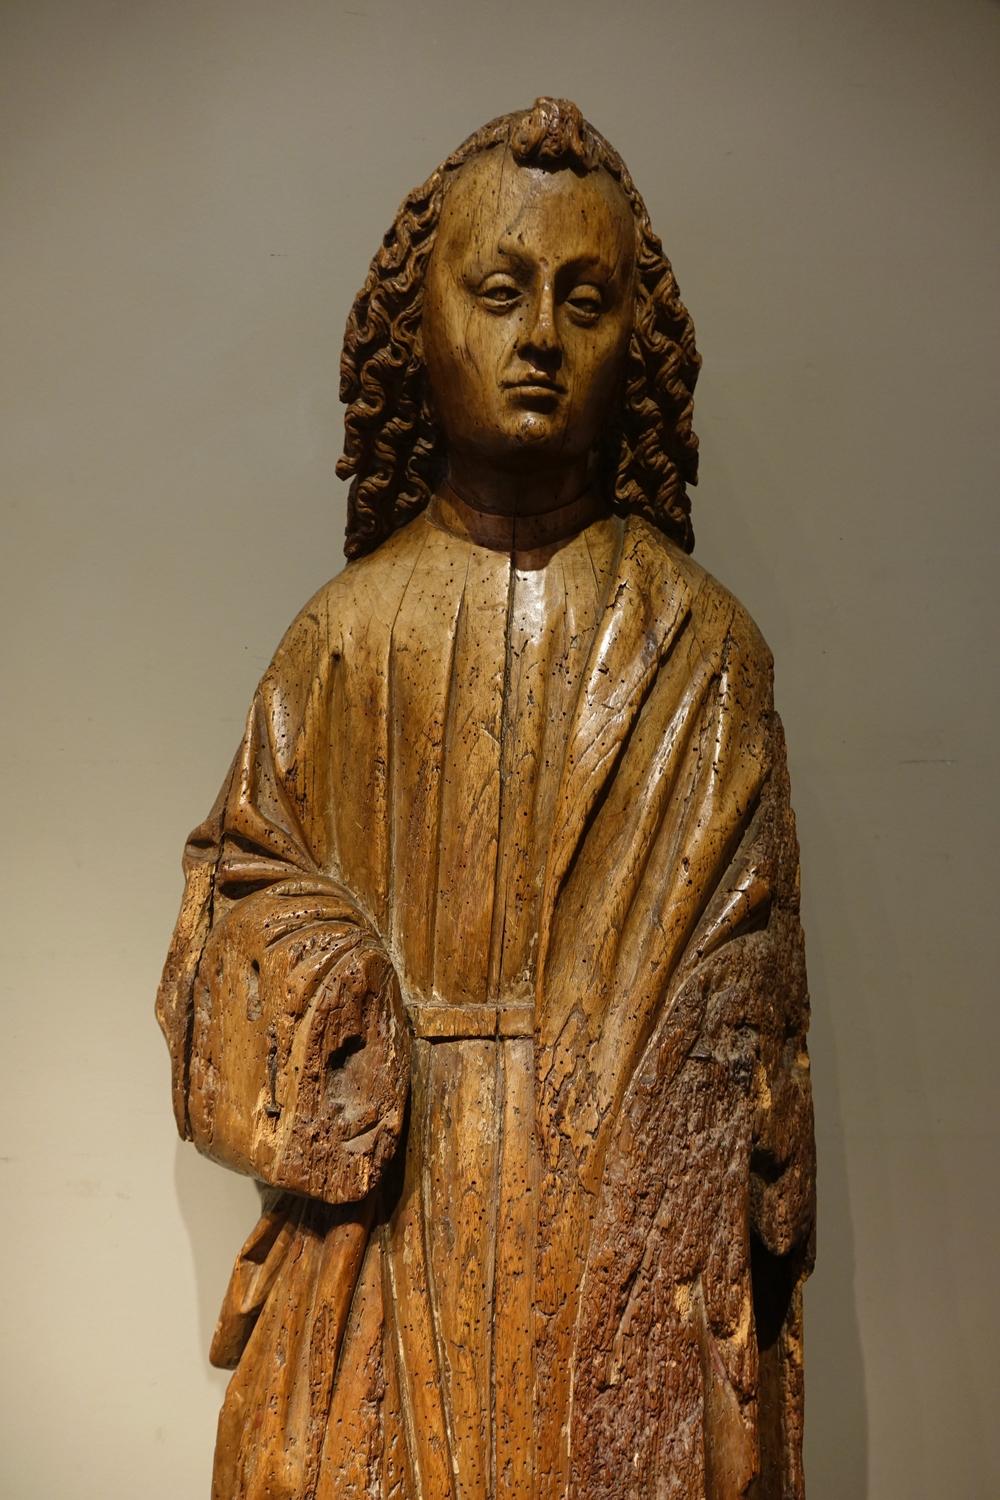 Große runde Skulptur aus Nussbaumholz, die den heiligen Johannes in der Position darstellt, die er normalerweise zu Füßen von Christus am Kreuz einnimmt.
Ein wunderschönes, ausdrucksstarkes Gesicht, umrahmt von gekonnt gelocktem Haar.
Sichtbare